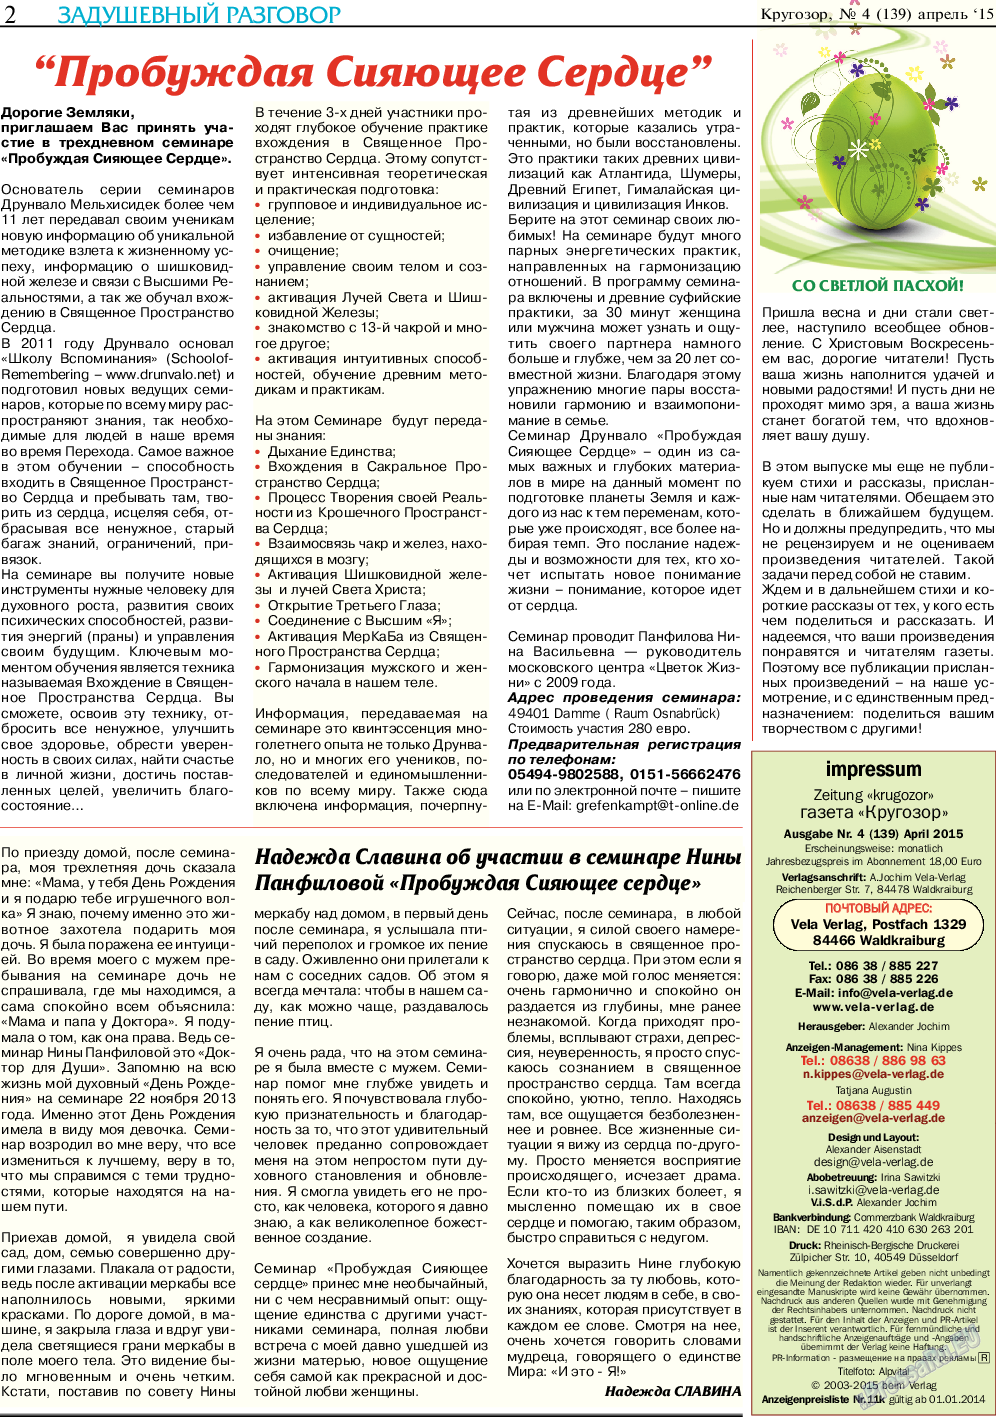 Кругозор (газета). 2015 год, номер 4, стр. 2